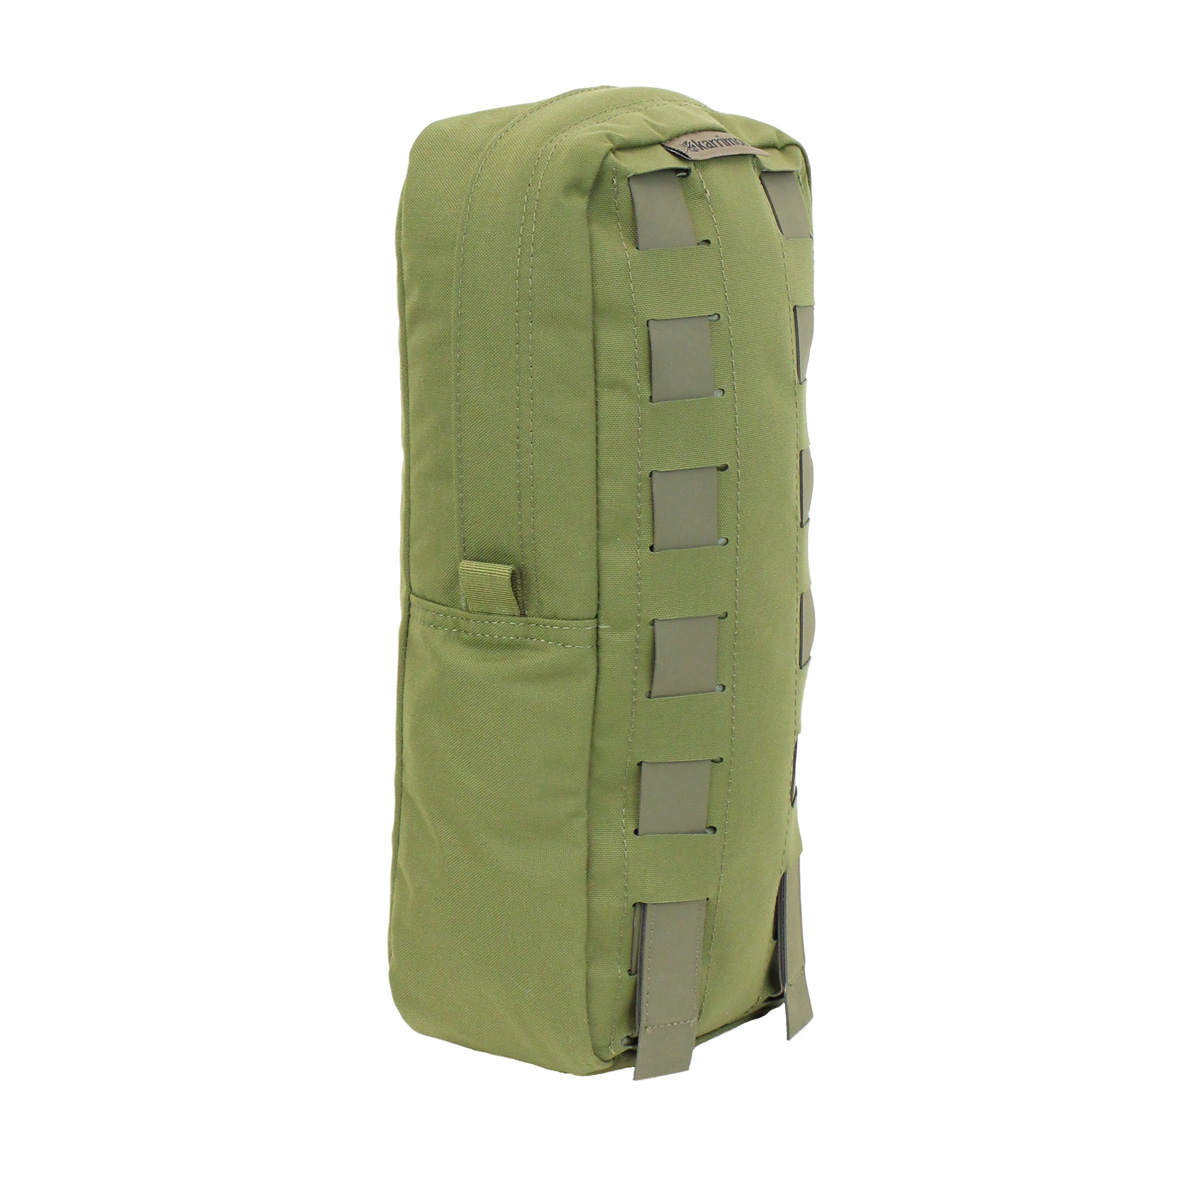 Izberite vrhunsko kakovostno stransko vojaško torbo Nordic 4L za vaš vojaški nahrbtnik. Torba je narejena iz trpežnega materiala in je idealna za shranjevanje vojaške opreme. Pridobite svojo torbo Karrimor SF zdaj!